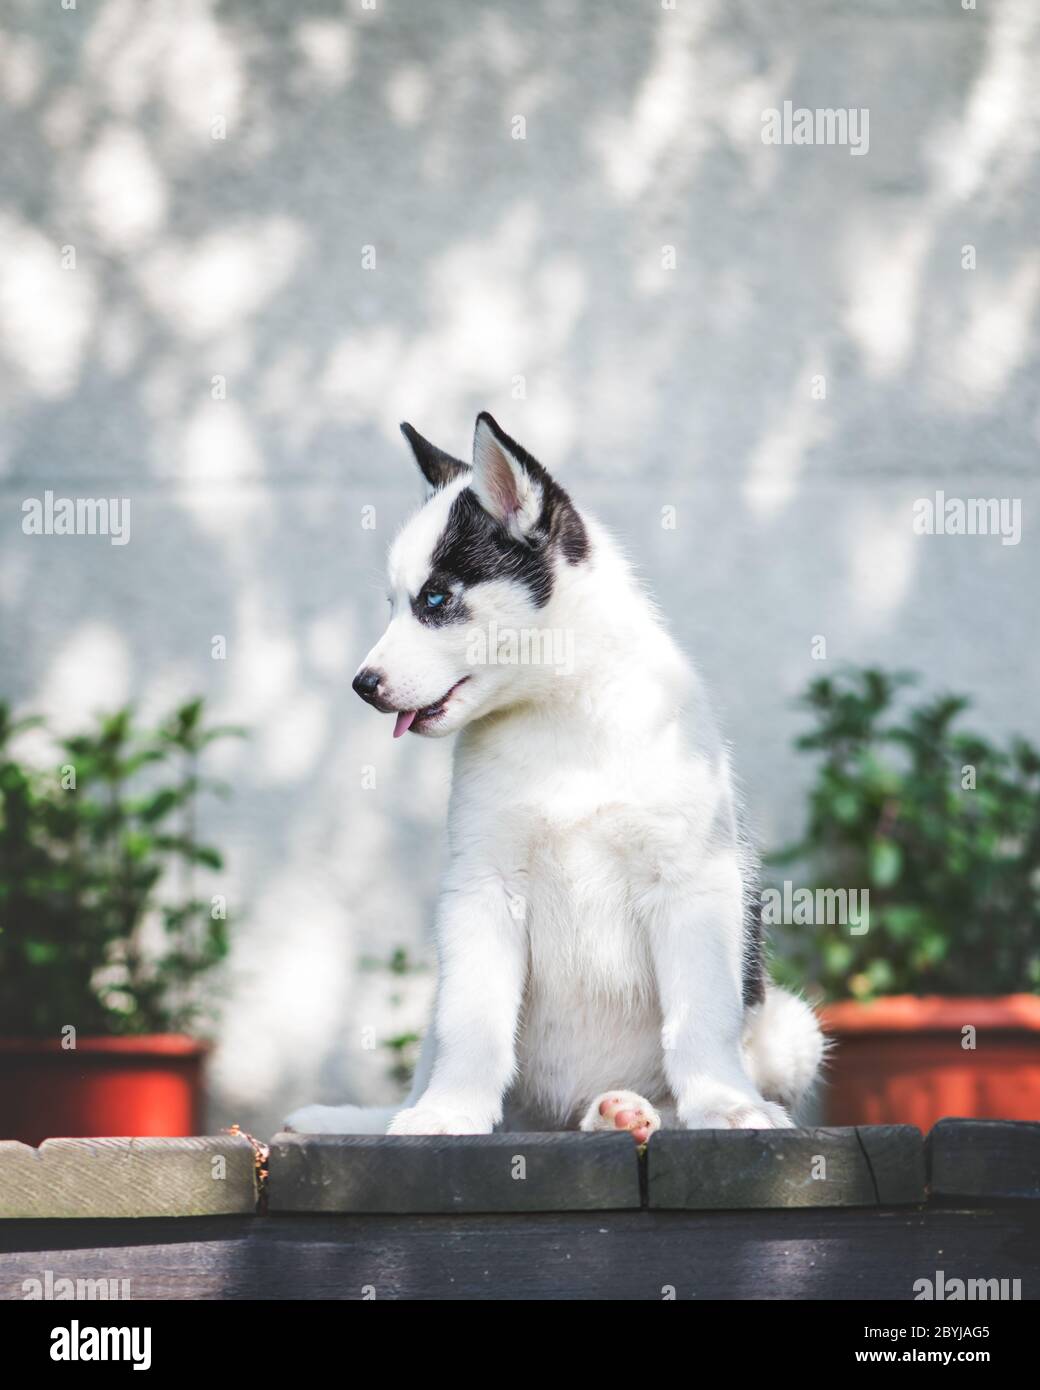 Ein kleiner weißer Hund Welpe brütet sibirischen Husky mit schönen blauen Augen auf Holzterrasse. Hunde und Haustiere Fotografie Stockfoto